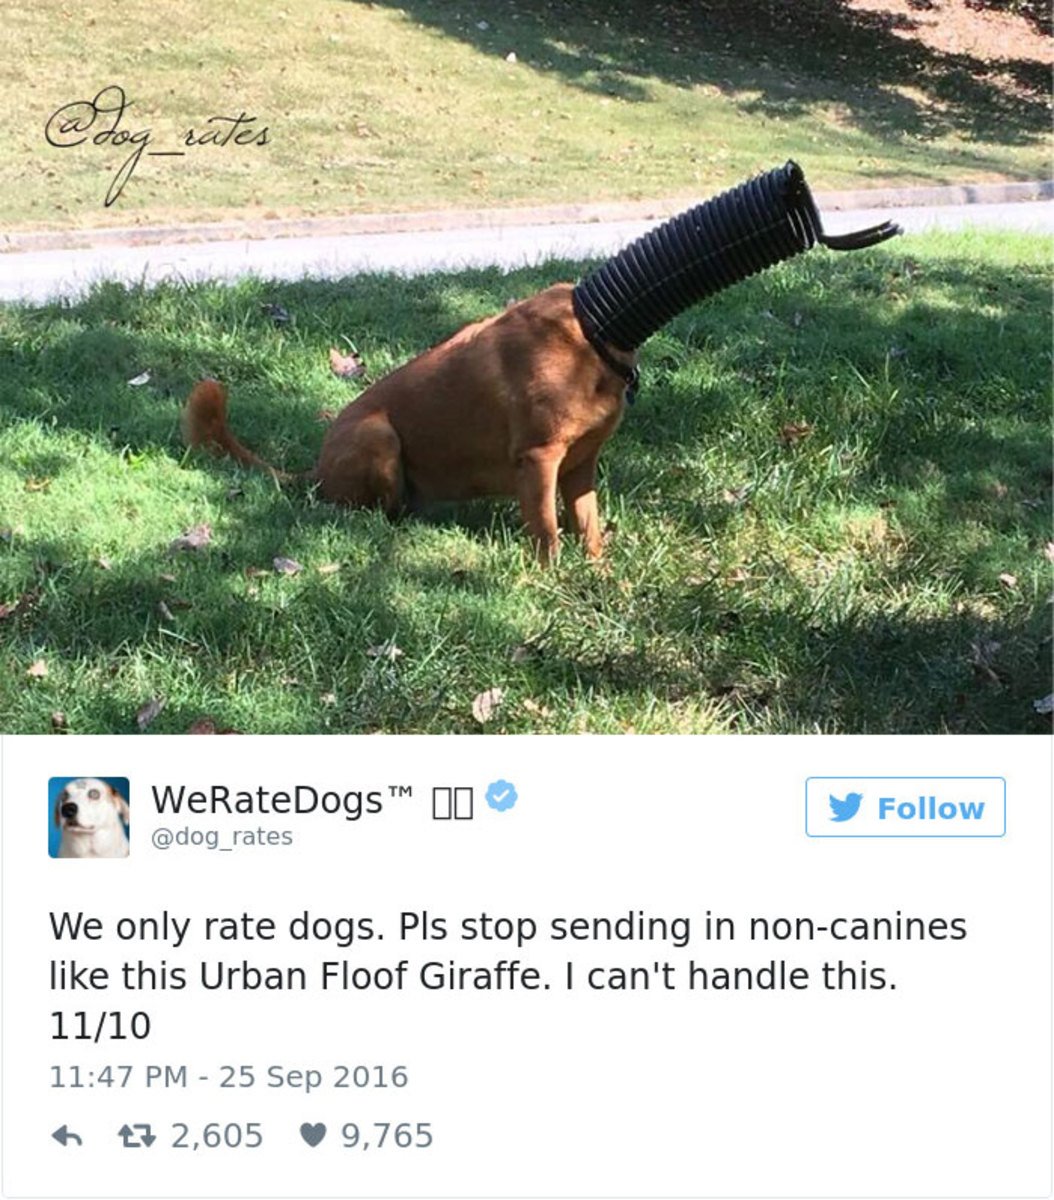 @dog_rates